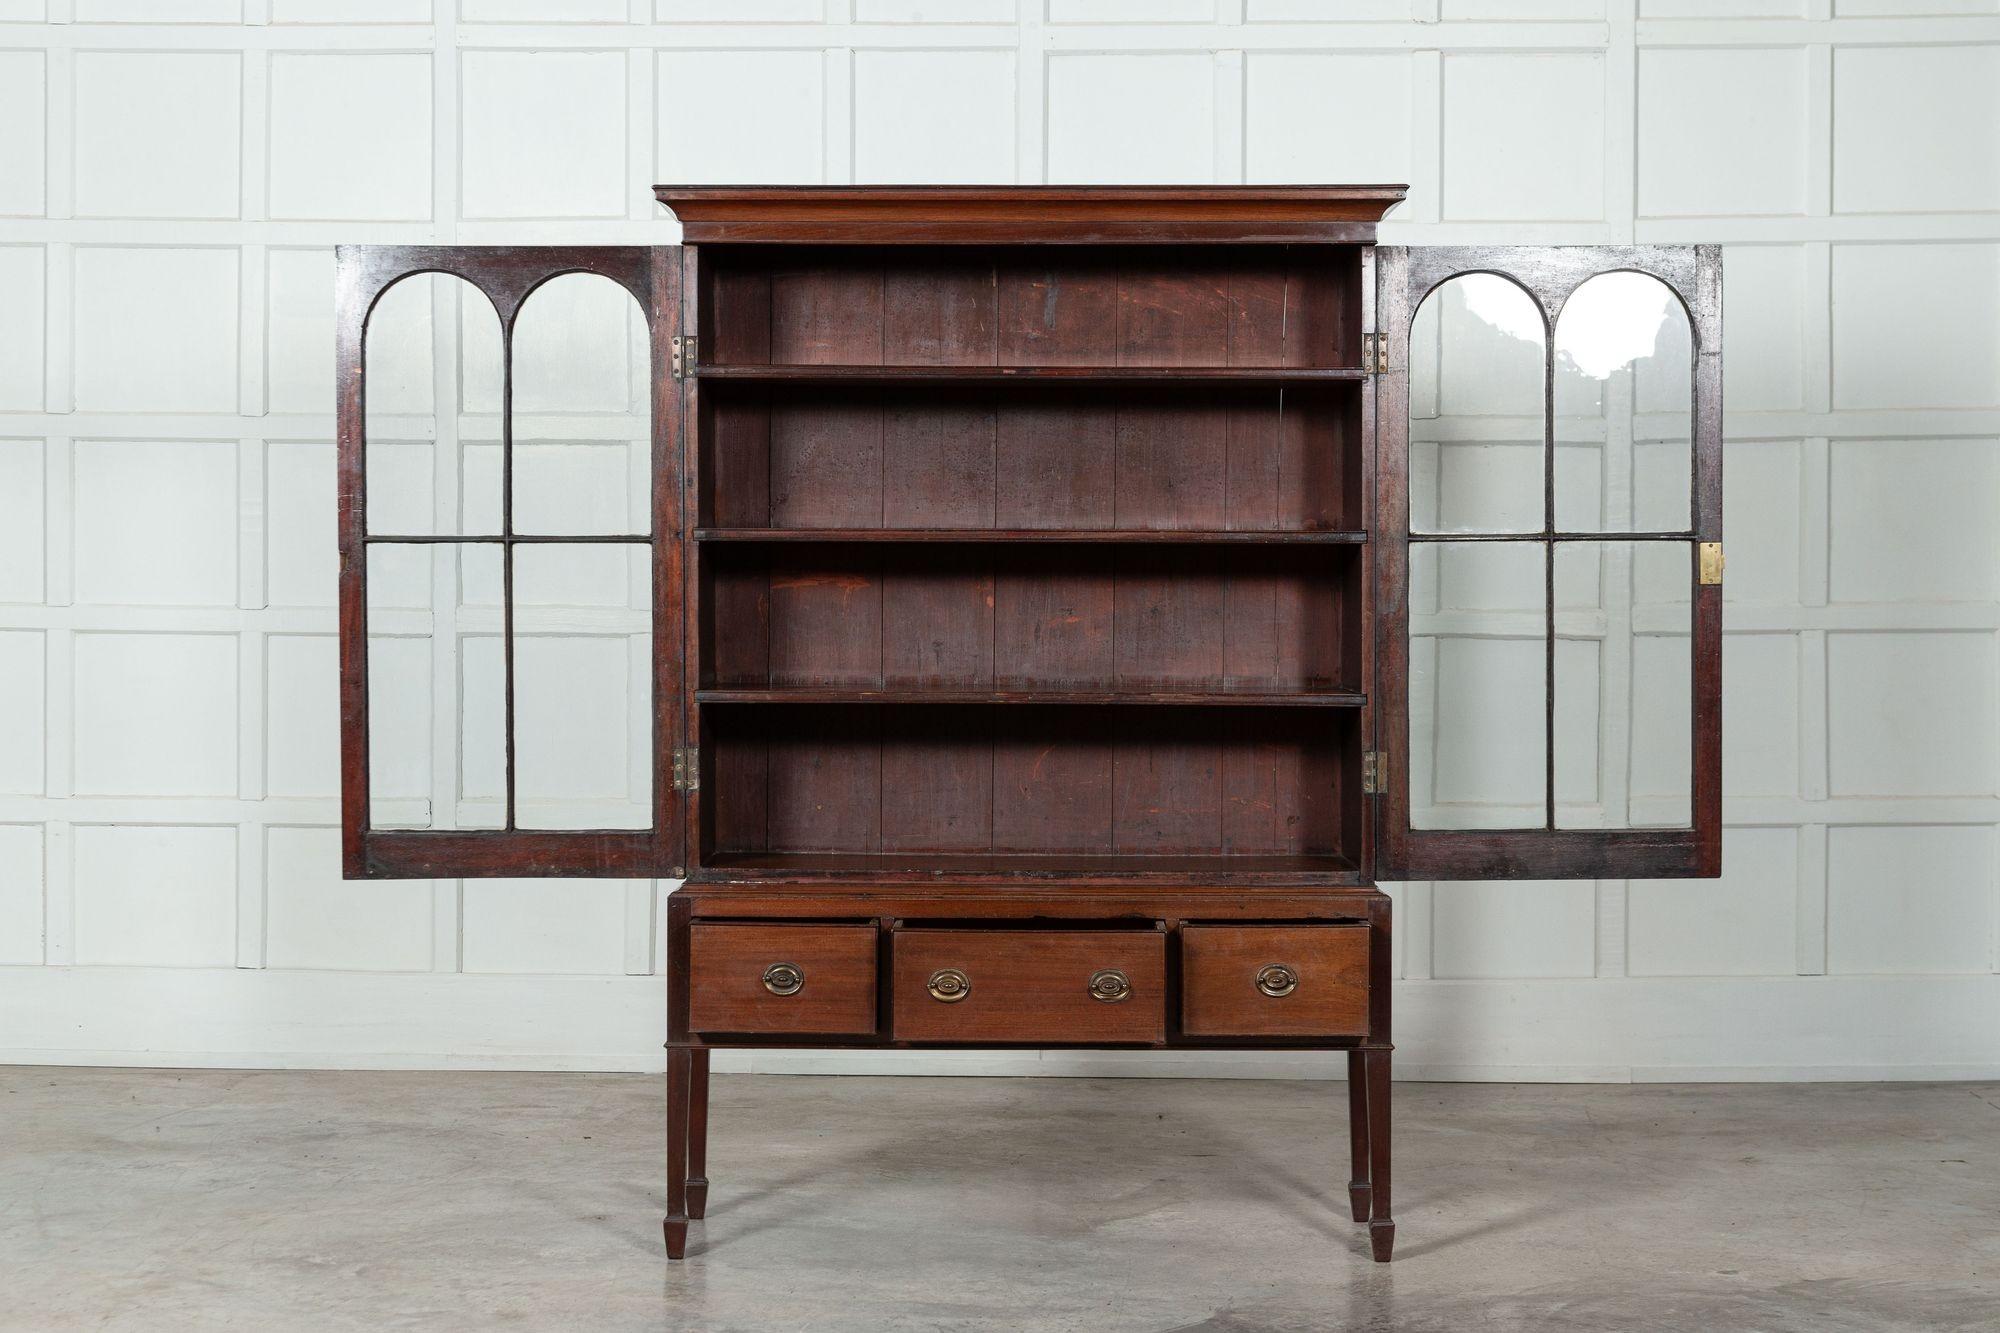 circa 1910
English Mahogany Arched Glazed Dresser Cabinet
sku 1541
Together W115 x D38 x H165cm
Base W111 x D35 x H56cm
Top W115 x D38 x H109cm